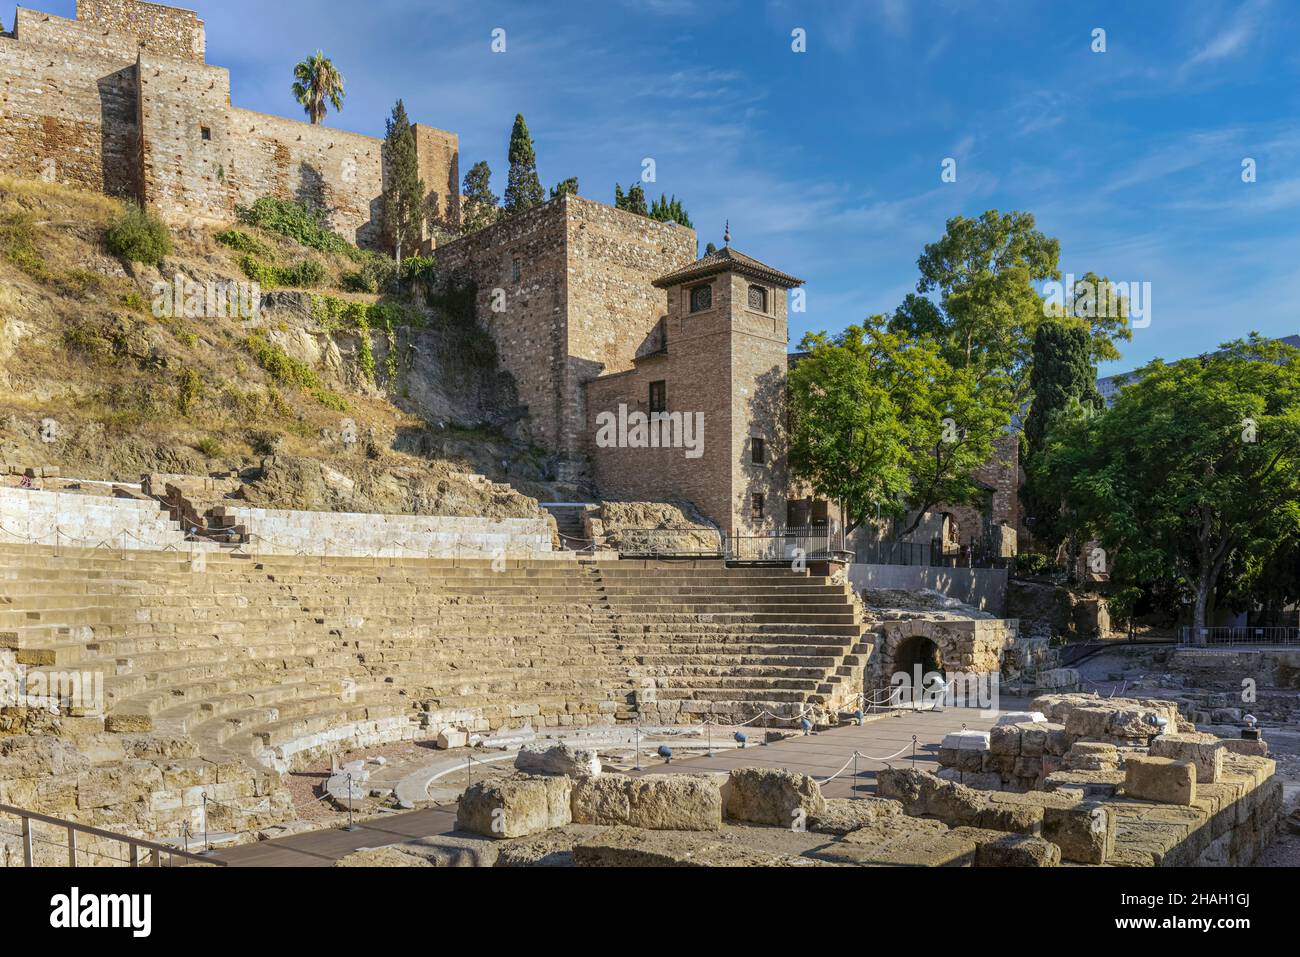 Das römische Theater unter den Mauern der maurischen Alcazaba, oder Festung, Malaga, Costa del Sol, Provinz Malaga, Andalusien, Südspanien. Die Thea Stockfoto